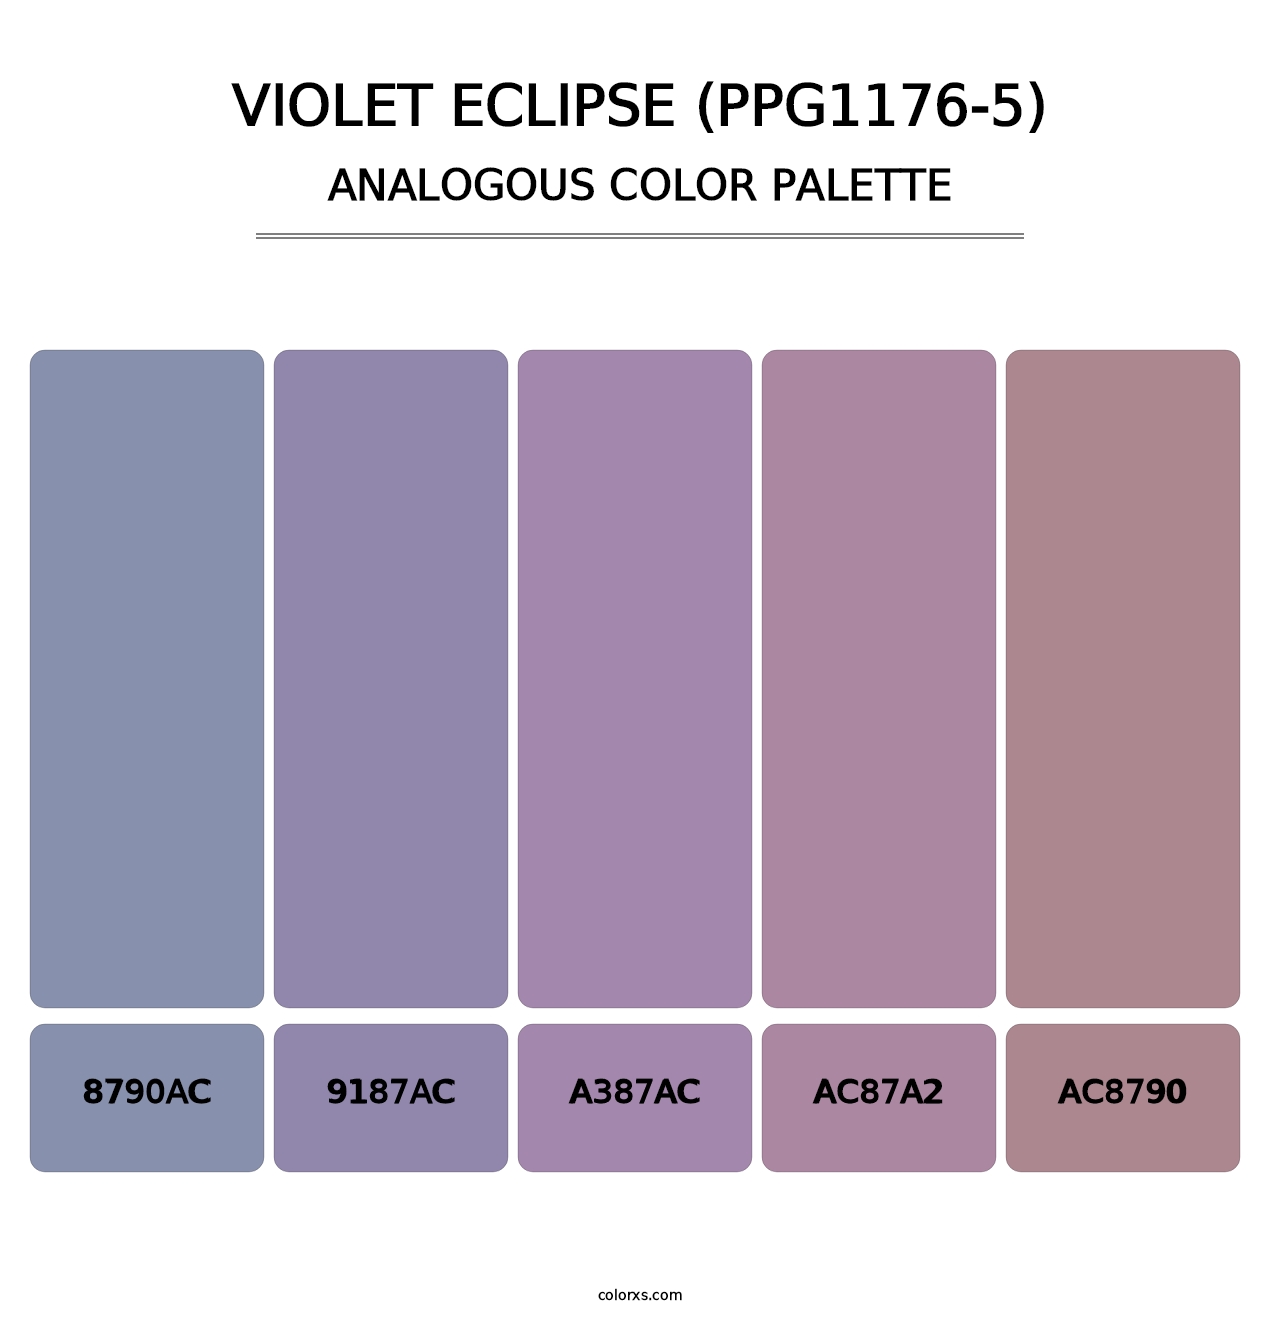 Violet Eclipse (PPG1176-5) - Analogous Color Palette